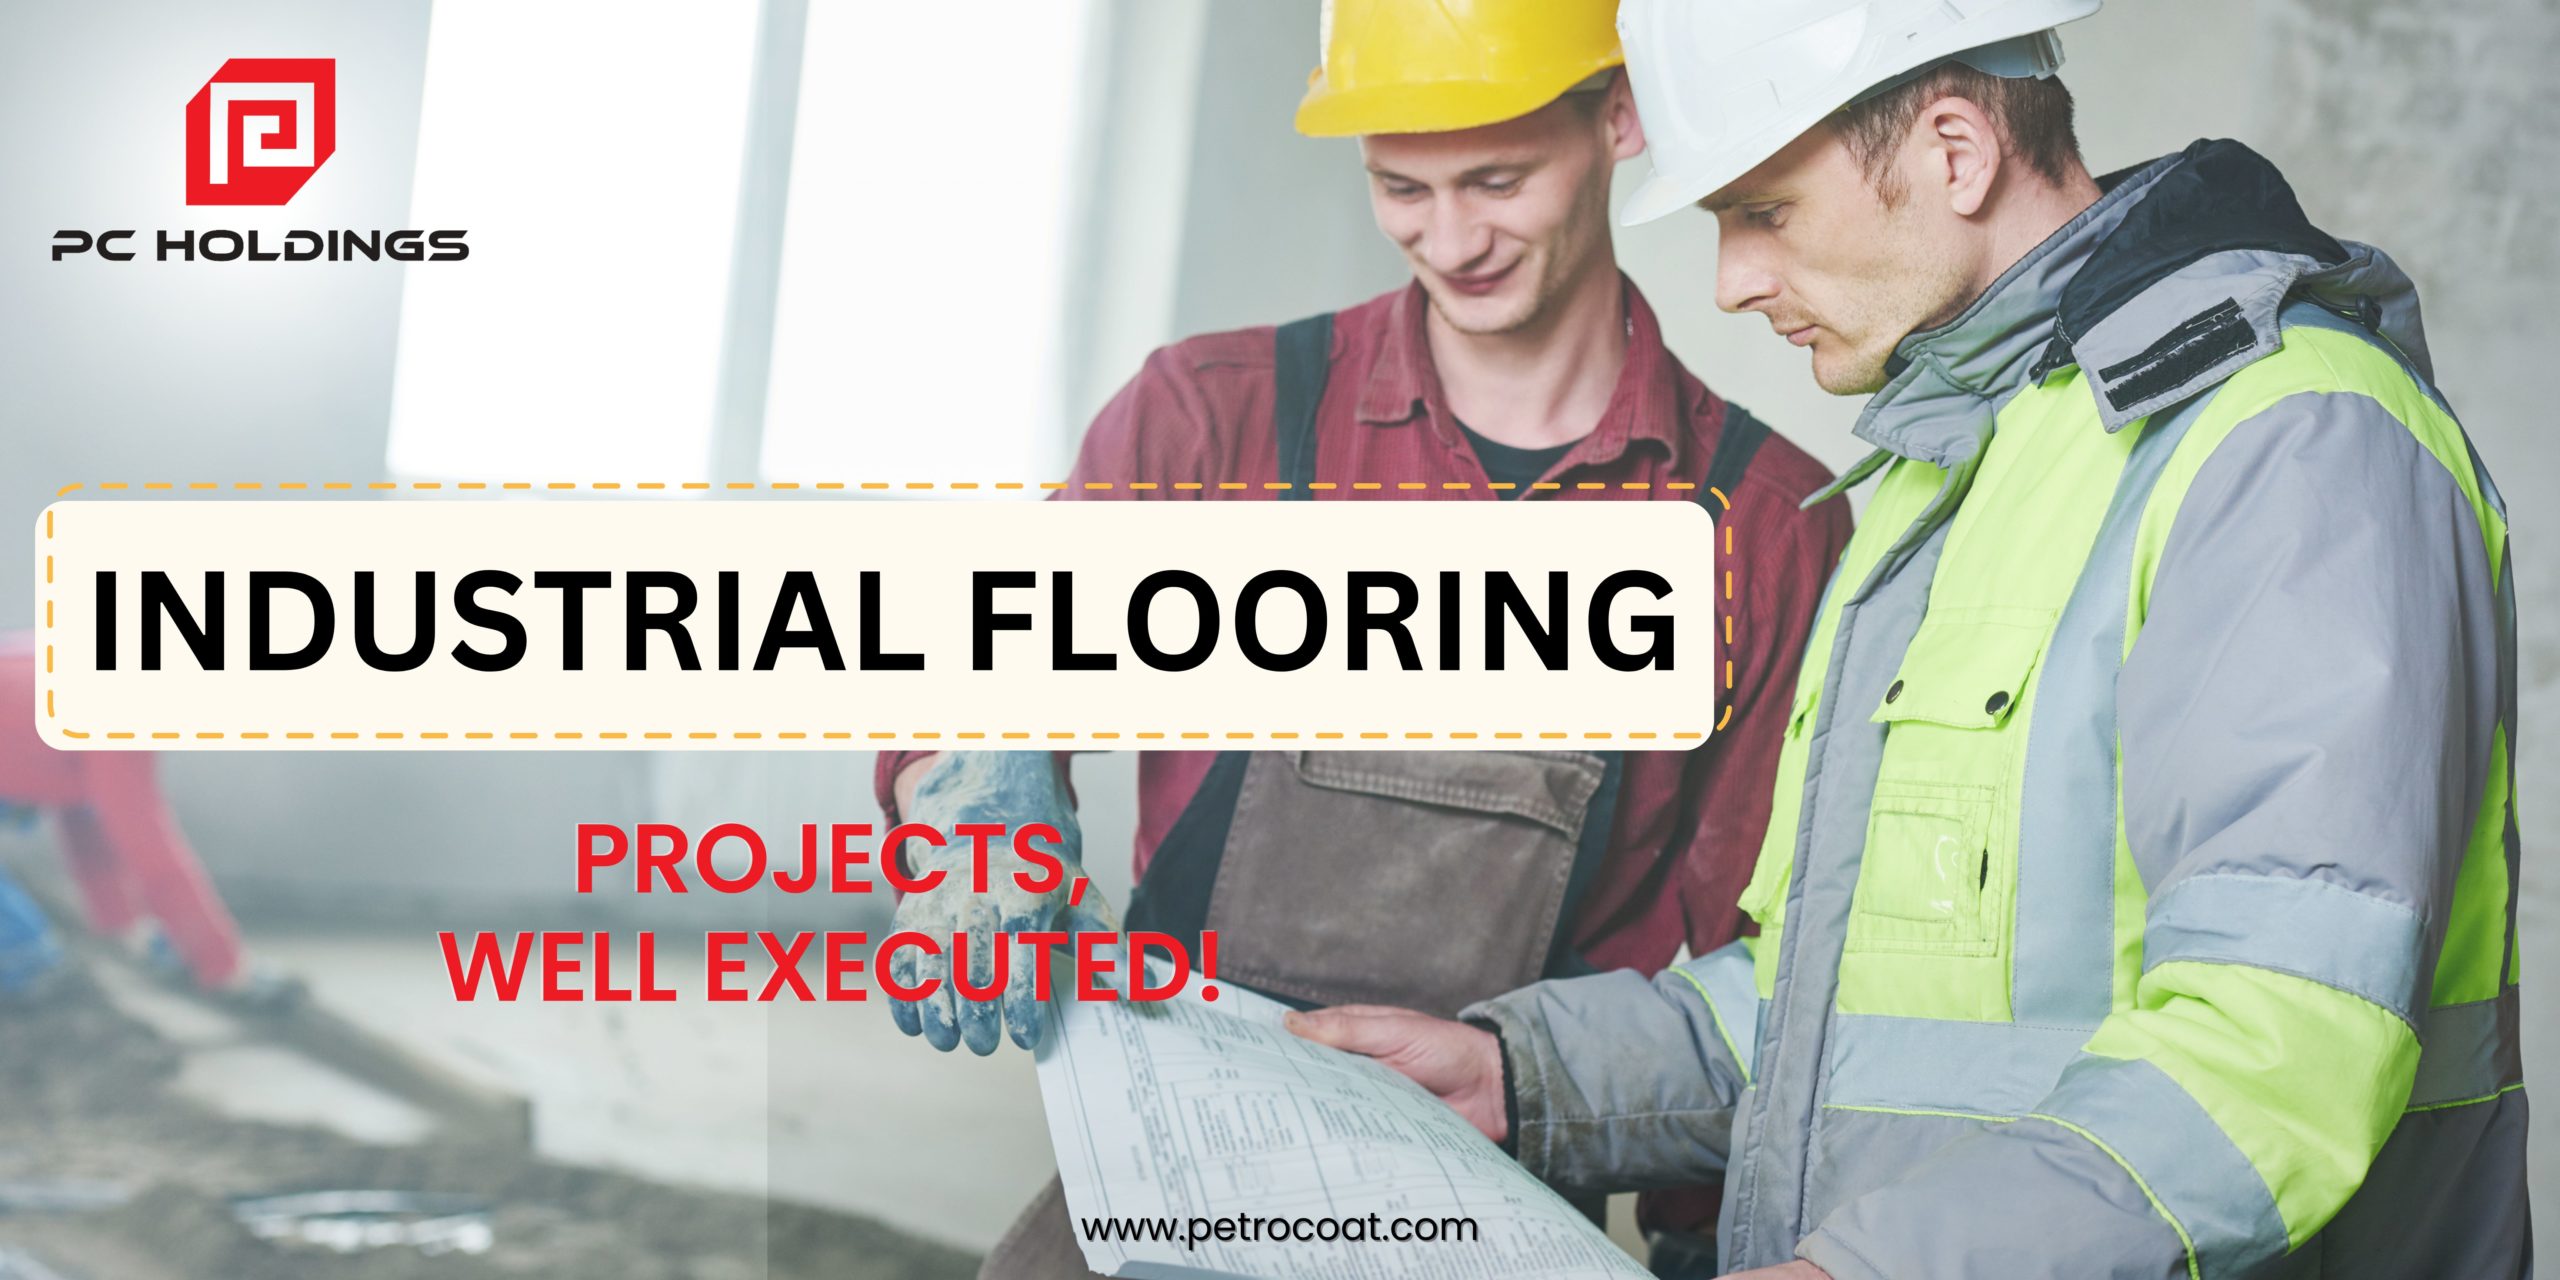 Industrial Flooring - PC Holdings